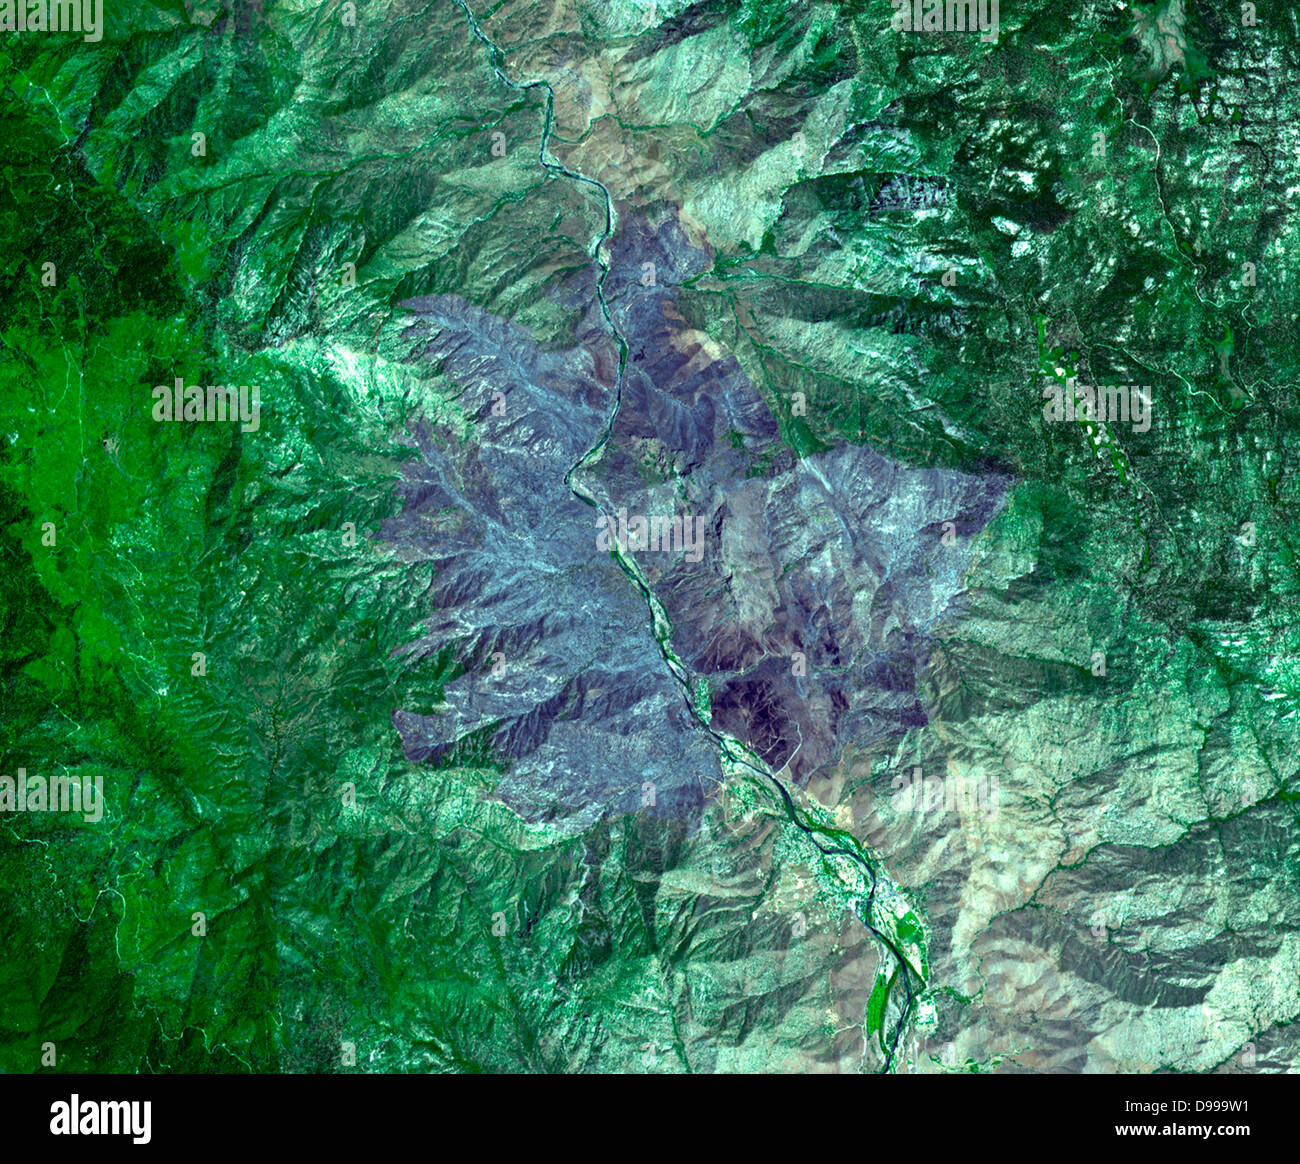 Bild der wildfire in der Nähe von Palmdale, Calif. am 1. August 2010. Die Krone Feuer genannt, die Flamme hatte verkohlte fast 57 Quadratkilometern. Satellitenbild. Stockfoto